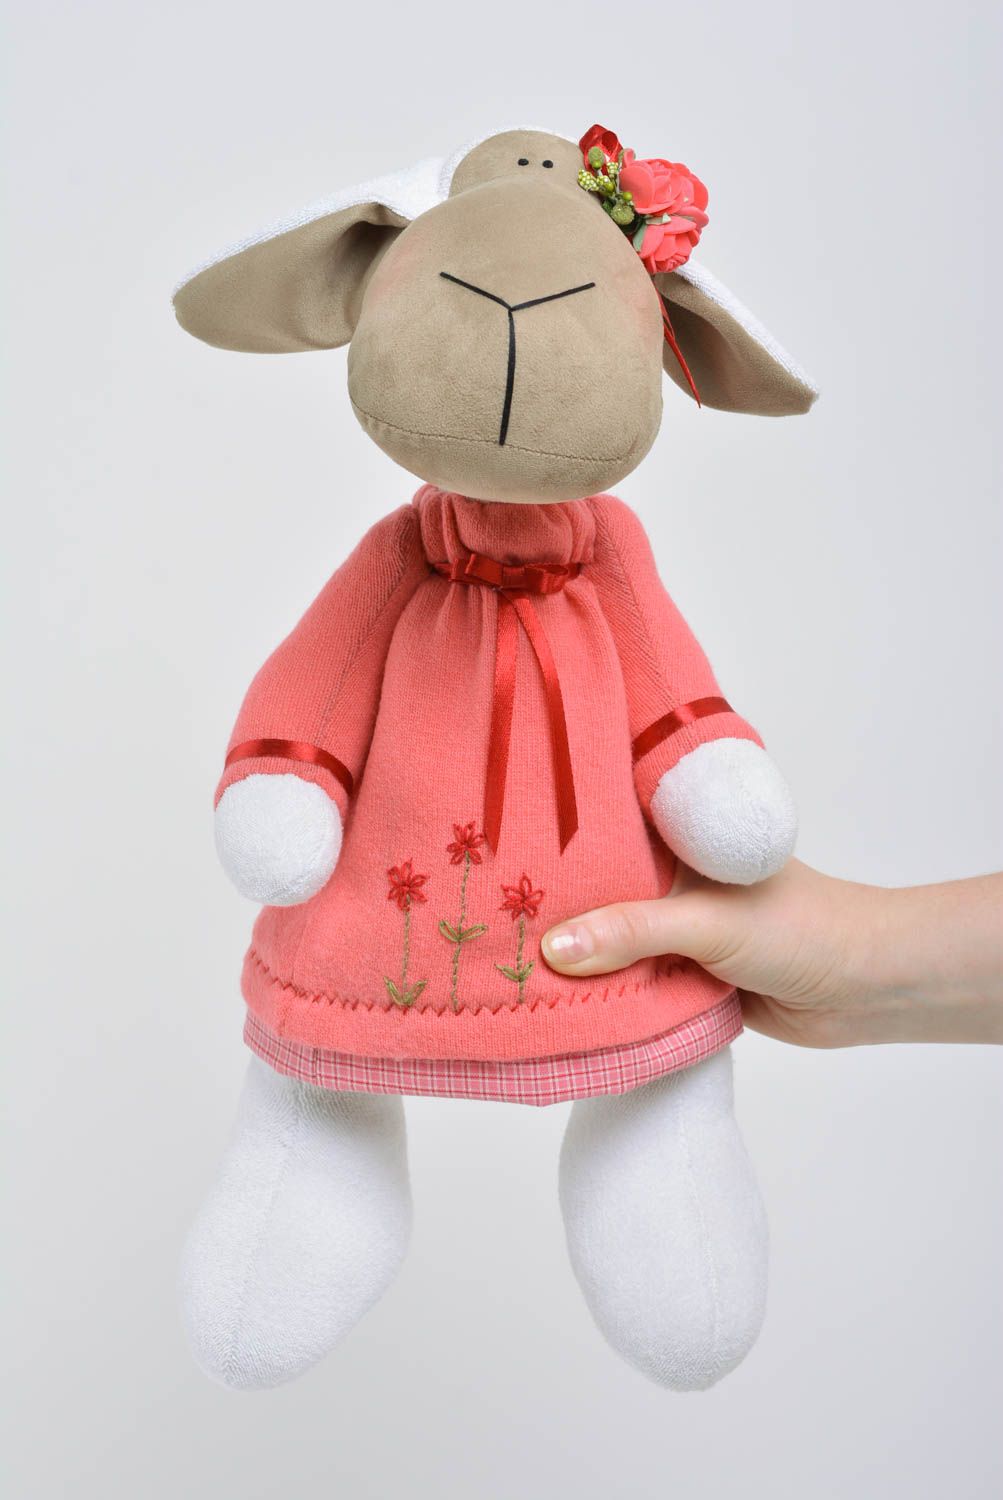 Handgemachtes Spielzeug aus Stoff in Form vom Nilpferd in rosafarbenem Kleid foto 4